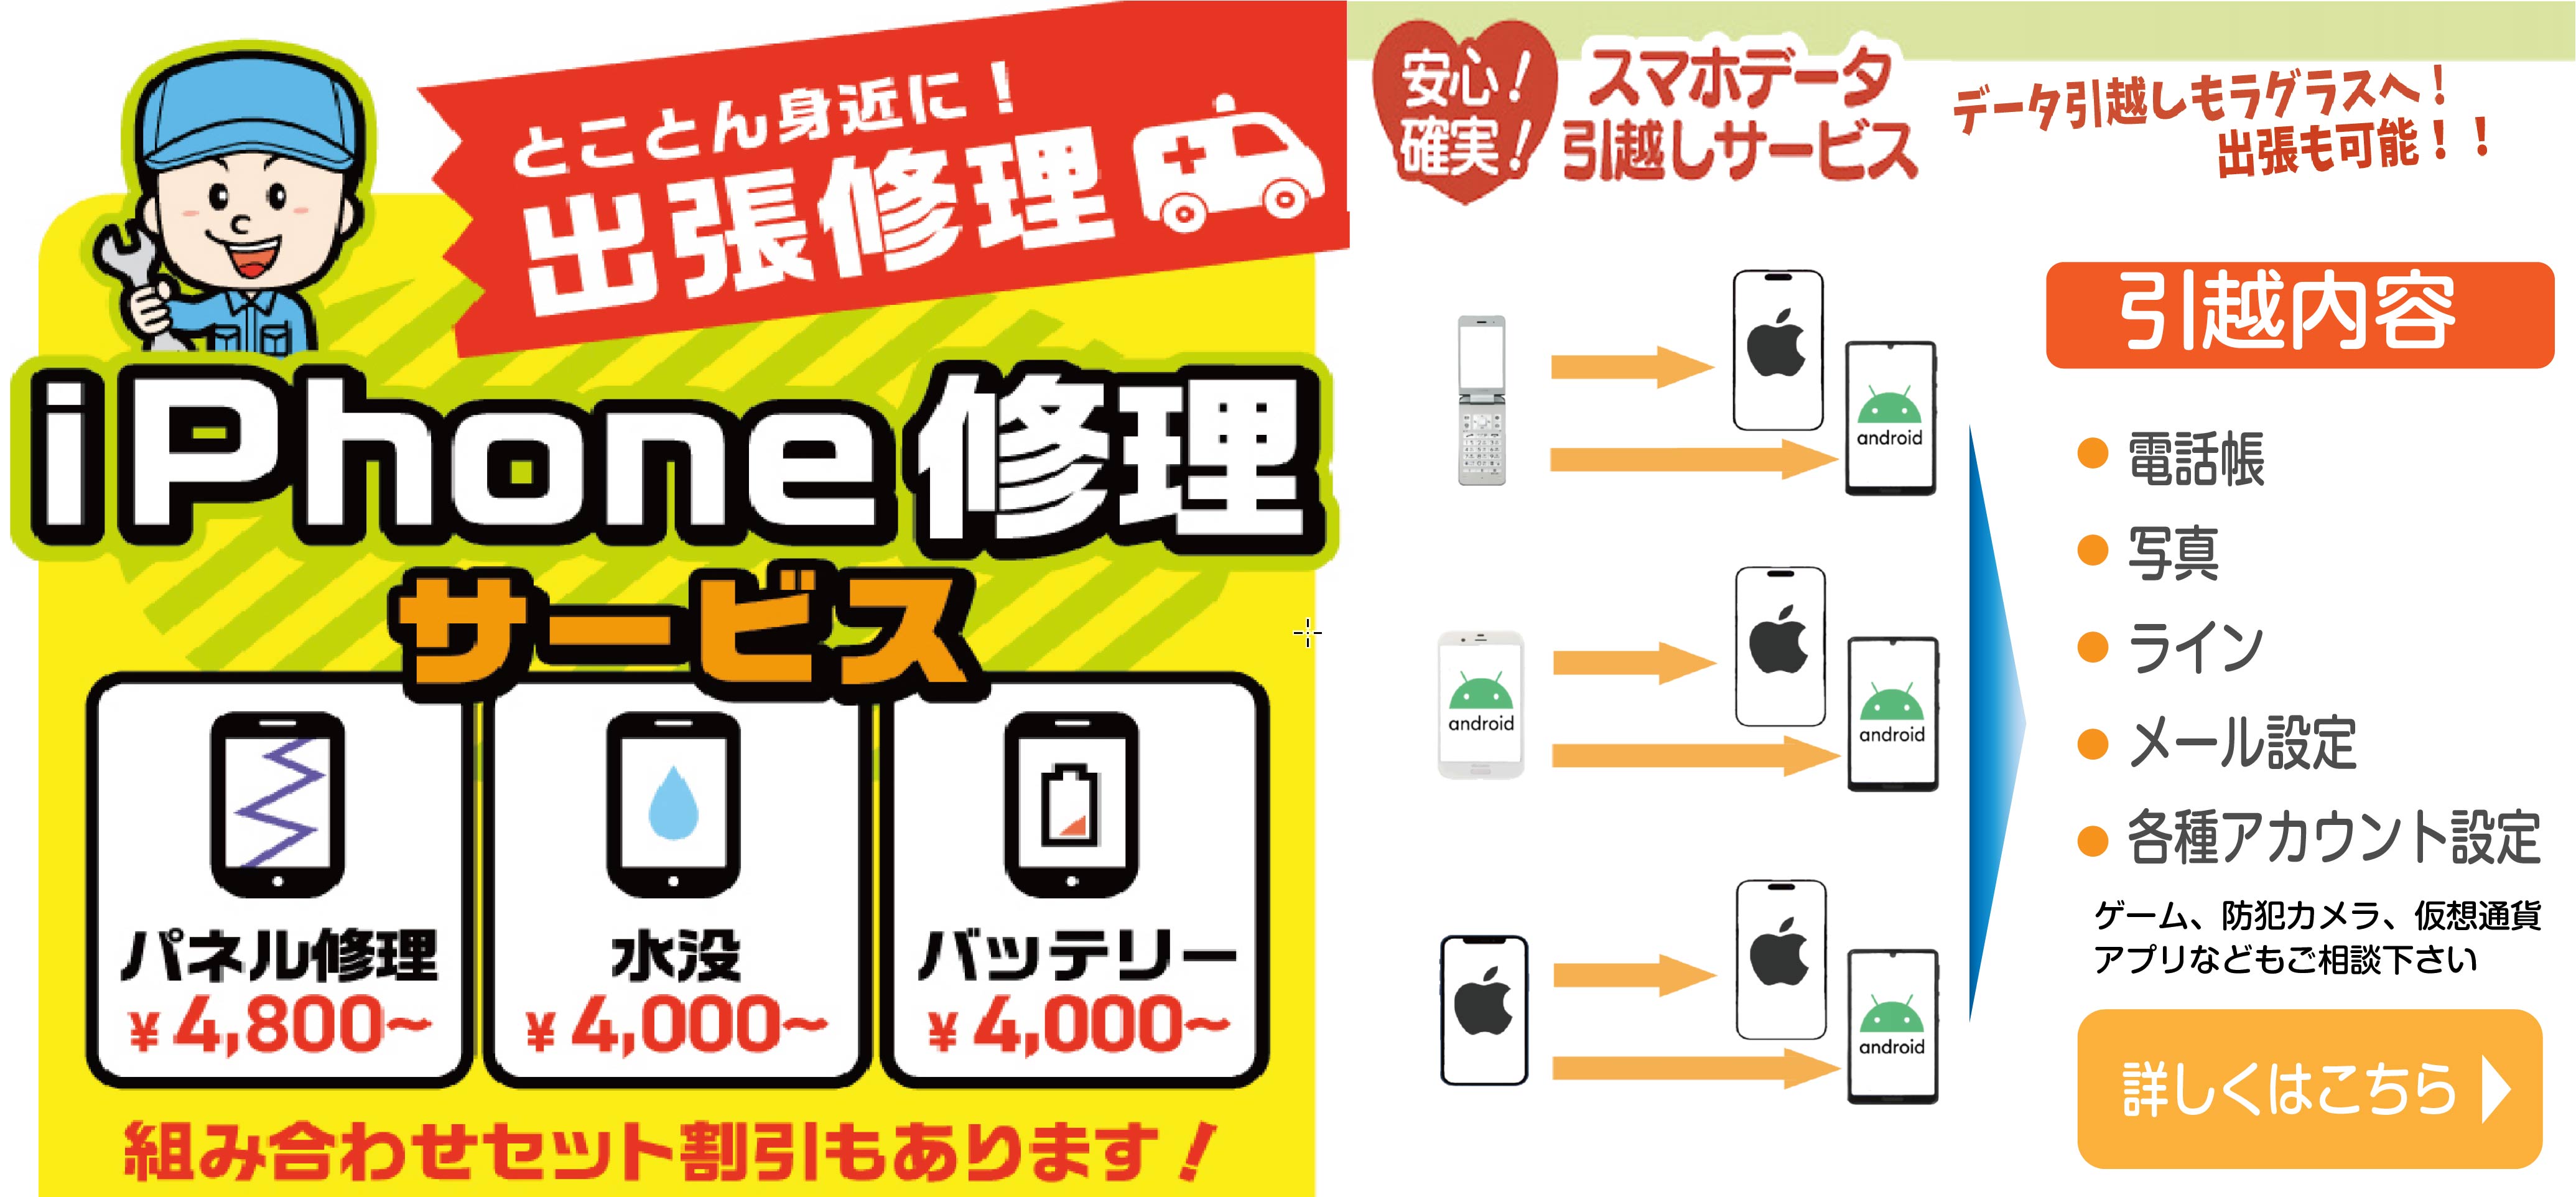 京都の格安携帯はエックスモバイル